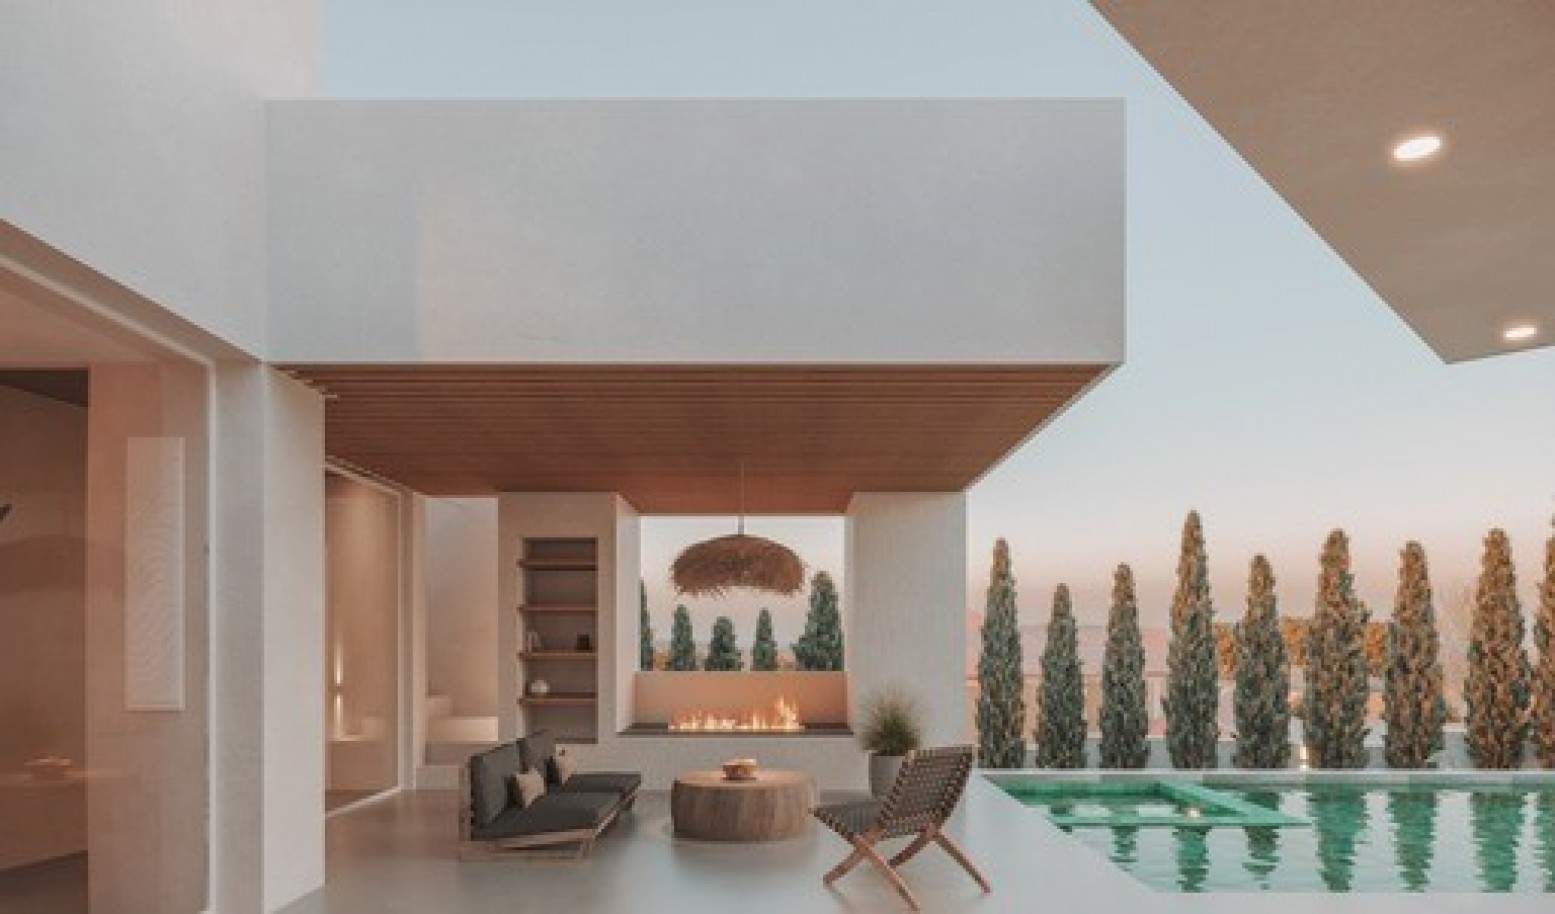 Villa de 4 dormitorios en construcción, en venta en Lagos, Algarve_208676